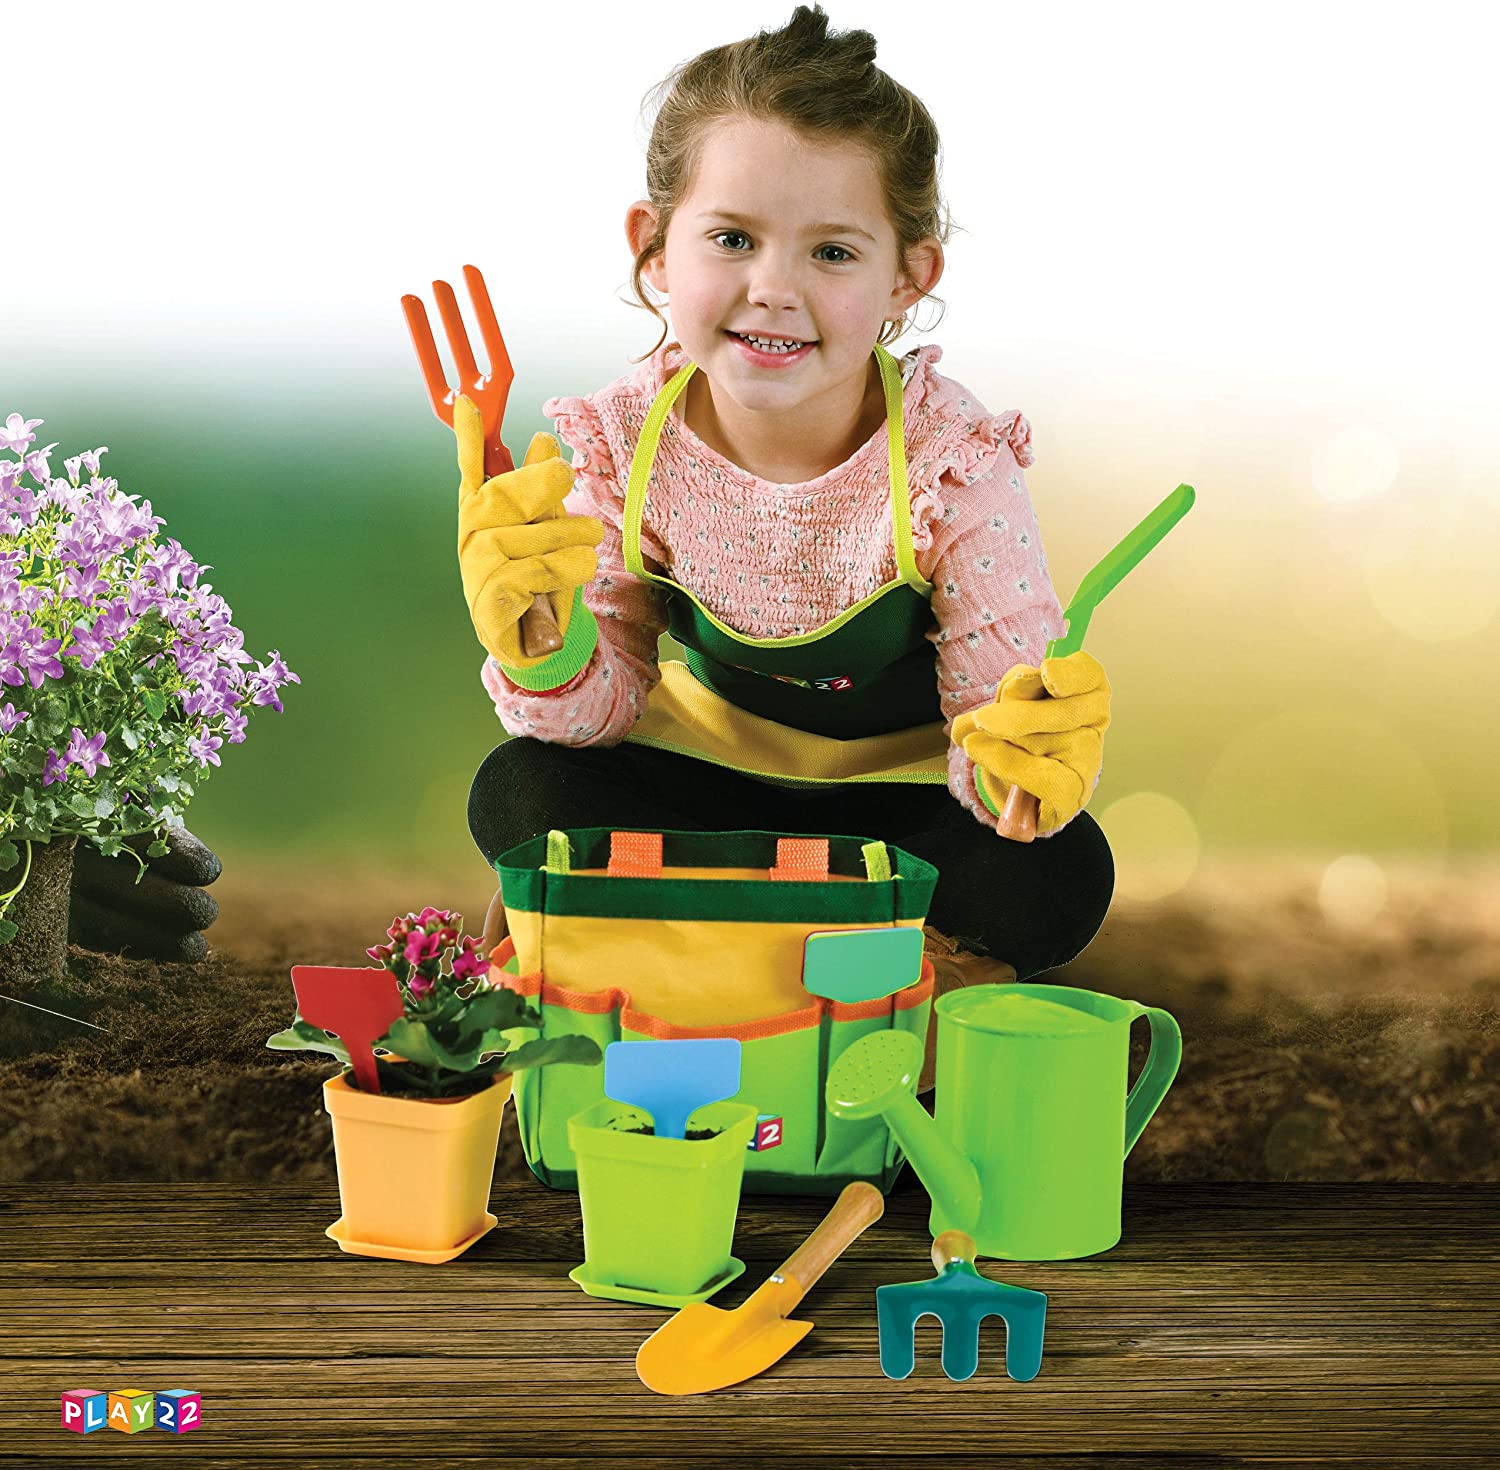 Play22 Kids Gardening Tool Set 12 PCS - Kids Gardening Tools Shovel Ra –  play22usa